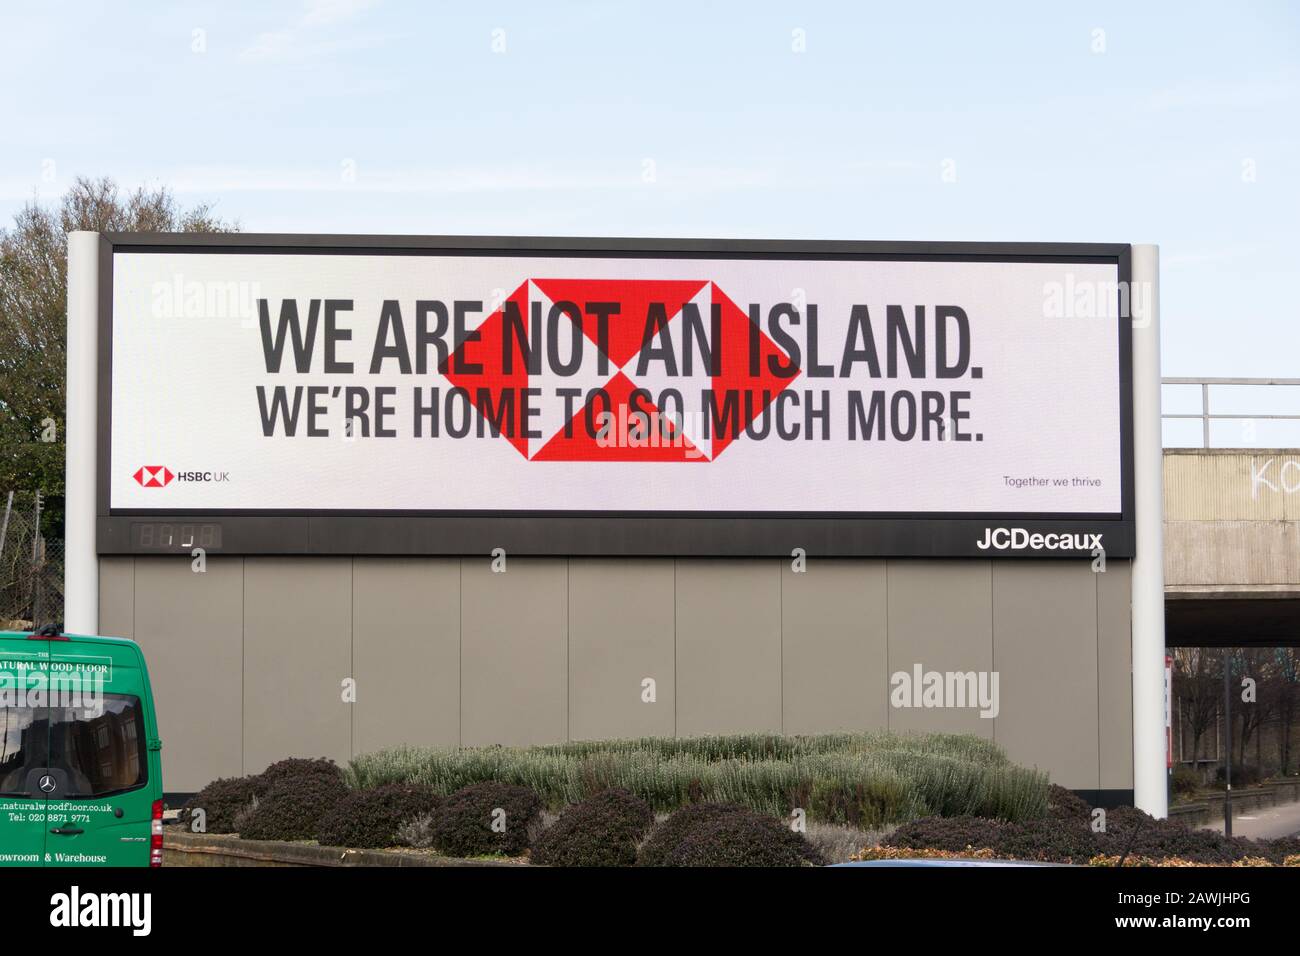 HSBC non siamo una campagna pubblicitaria Island da Wunderman Thompson su un cartellone elettronico JCDecaux, Wandsworth, Londra, Inghilterra, Regno Unito Foto Stock